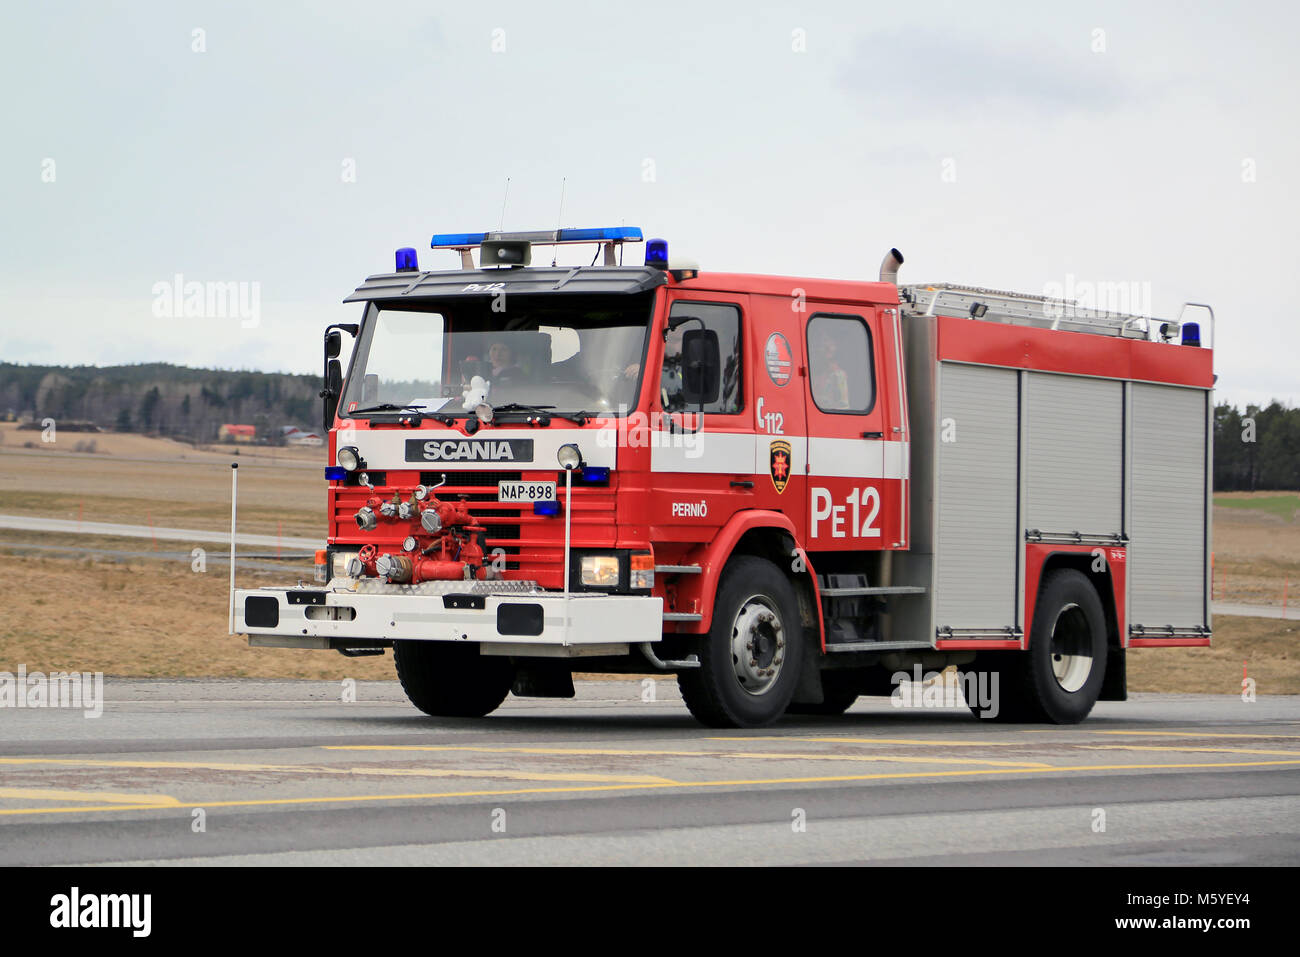 SALO, Finnland - 22. MÄRZ 2015: Klassische Scania Feuerwehrauto eilt entlang der Autobahn 25. Scania Löschfahrzeuge wurden von finnischen Feuerwehren für o verwendet. Stockfoto